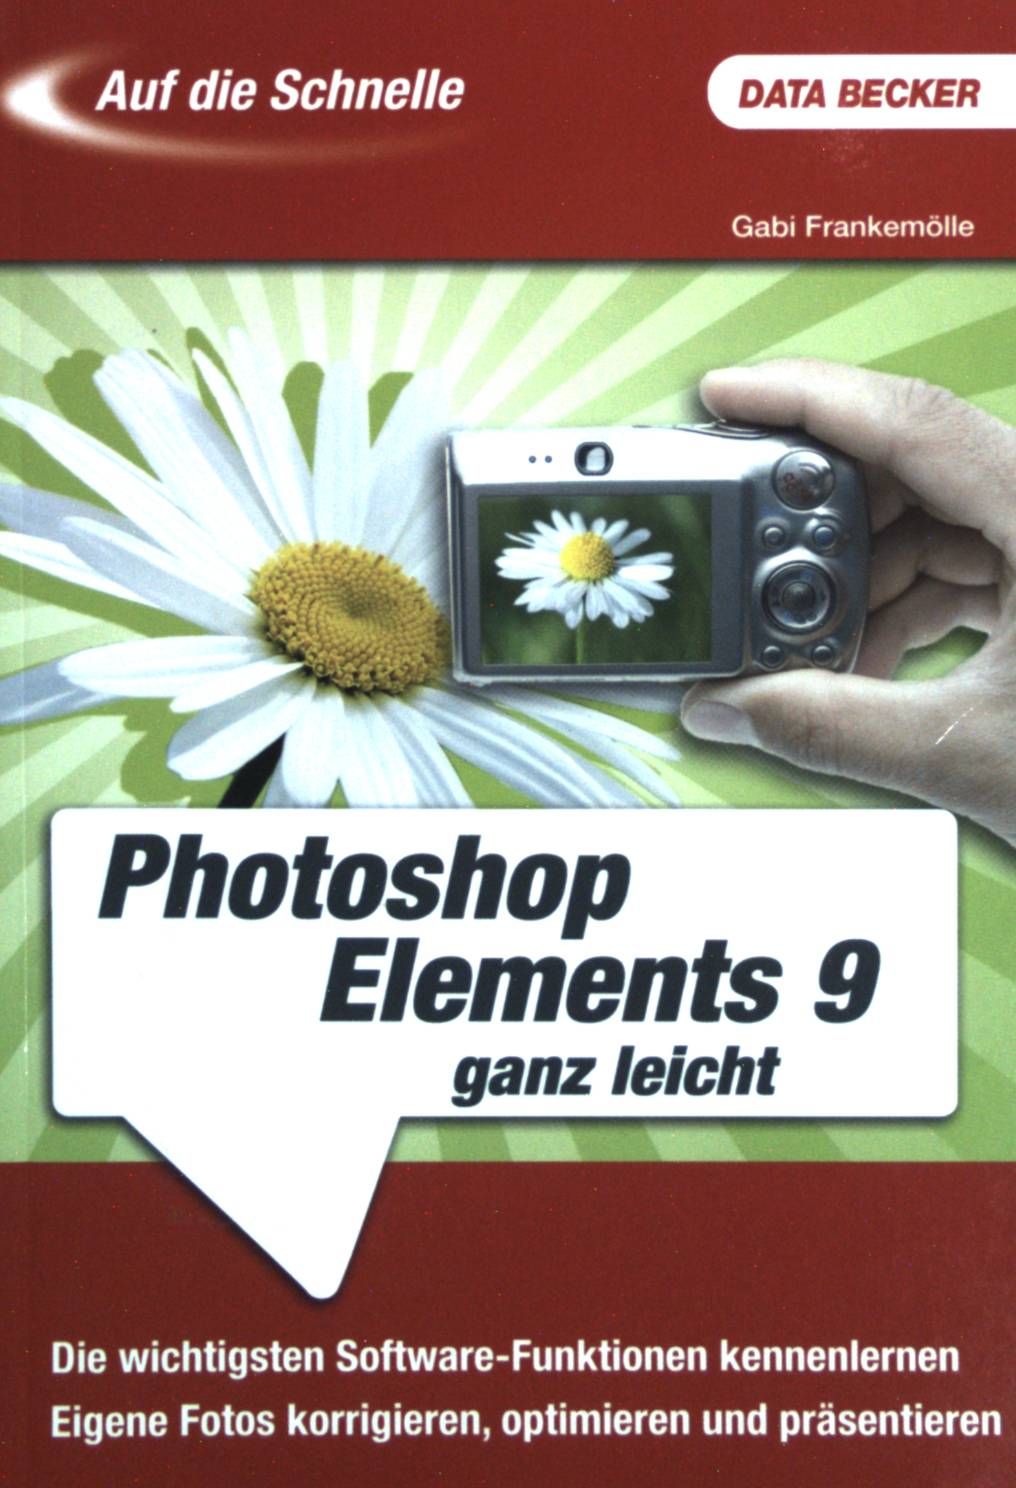 Adobe Photoshop Elements 9 ganz leicht : [die wichtigsten Software-Funktionen kennenlernen  eigene Fotos korrigieren, optimieren und präsentieren]. Auf die Schnelle. - Frankemölle, Gabi